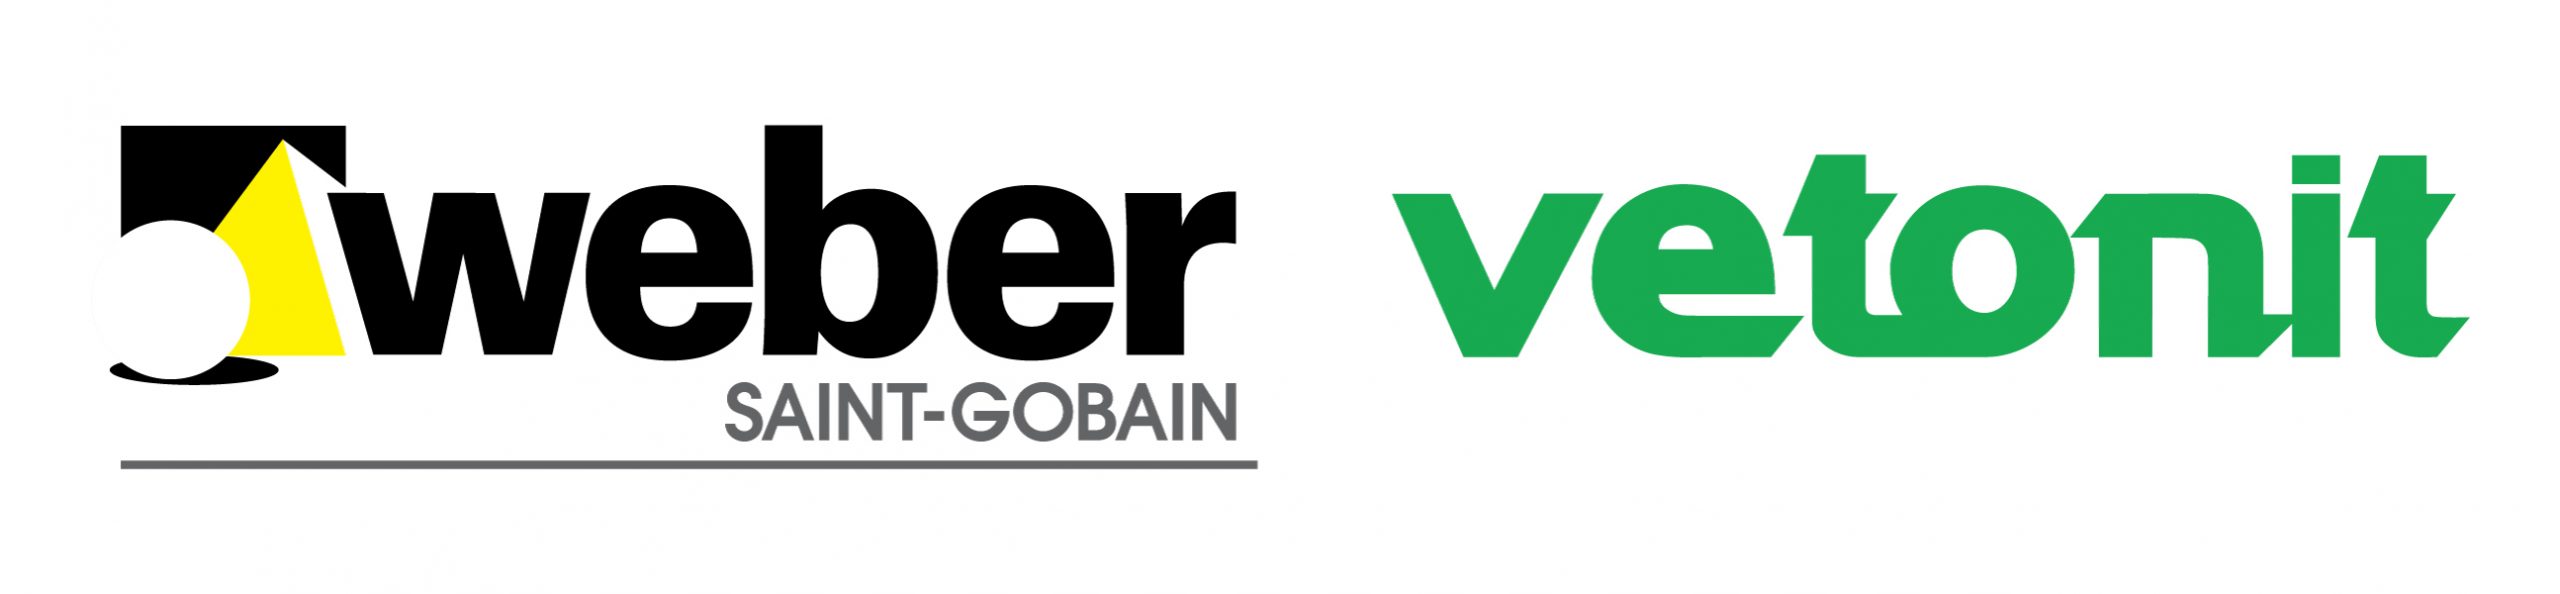 weber-vetonit_logo_06-2010-bg